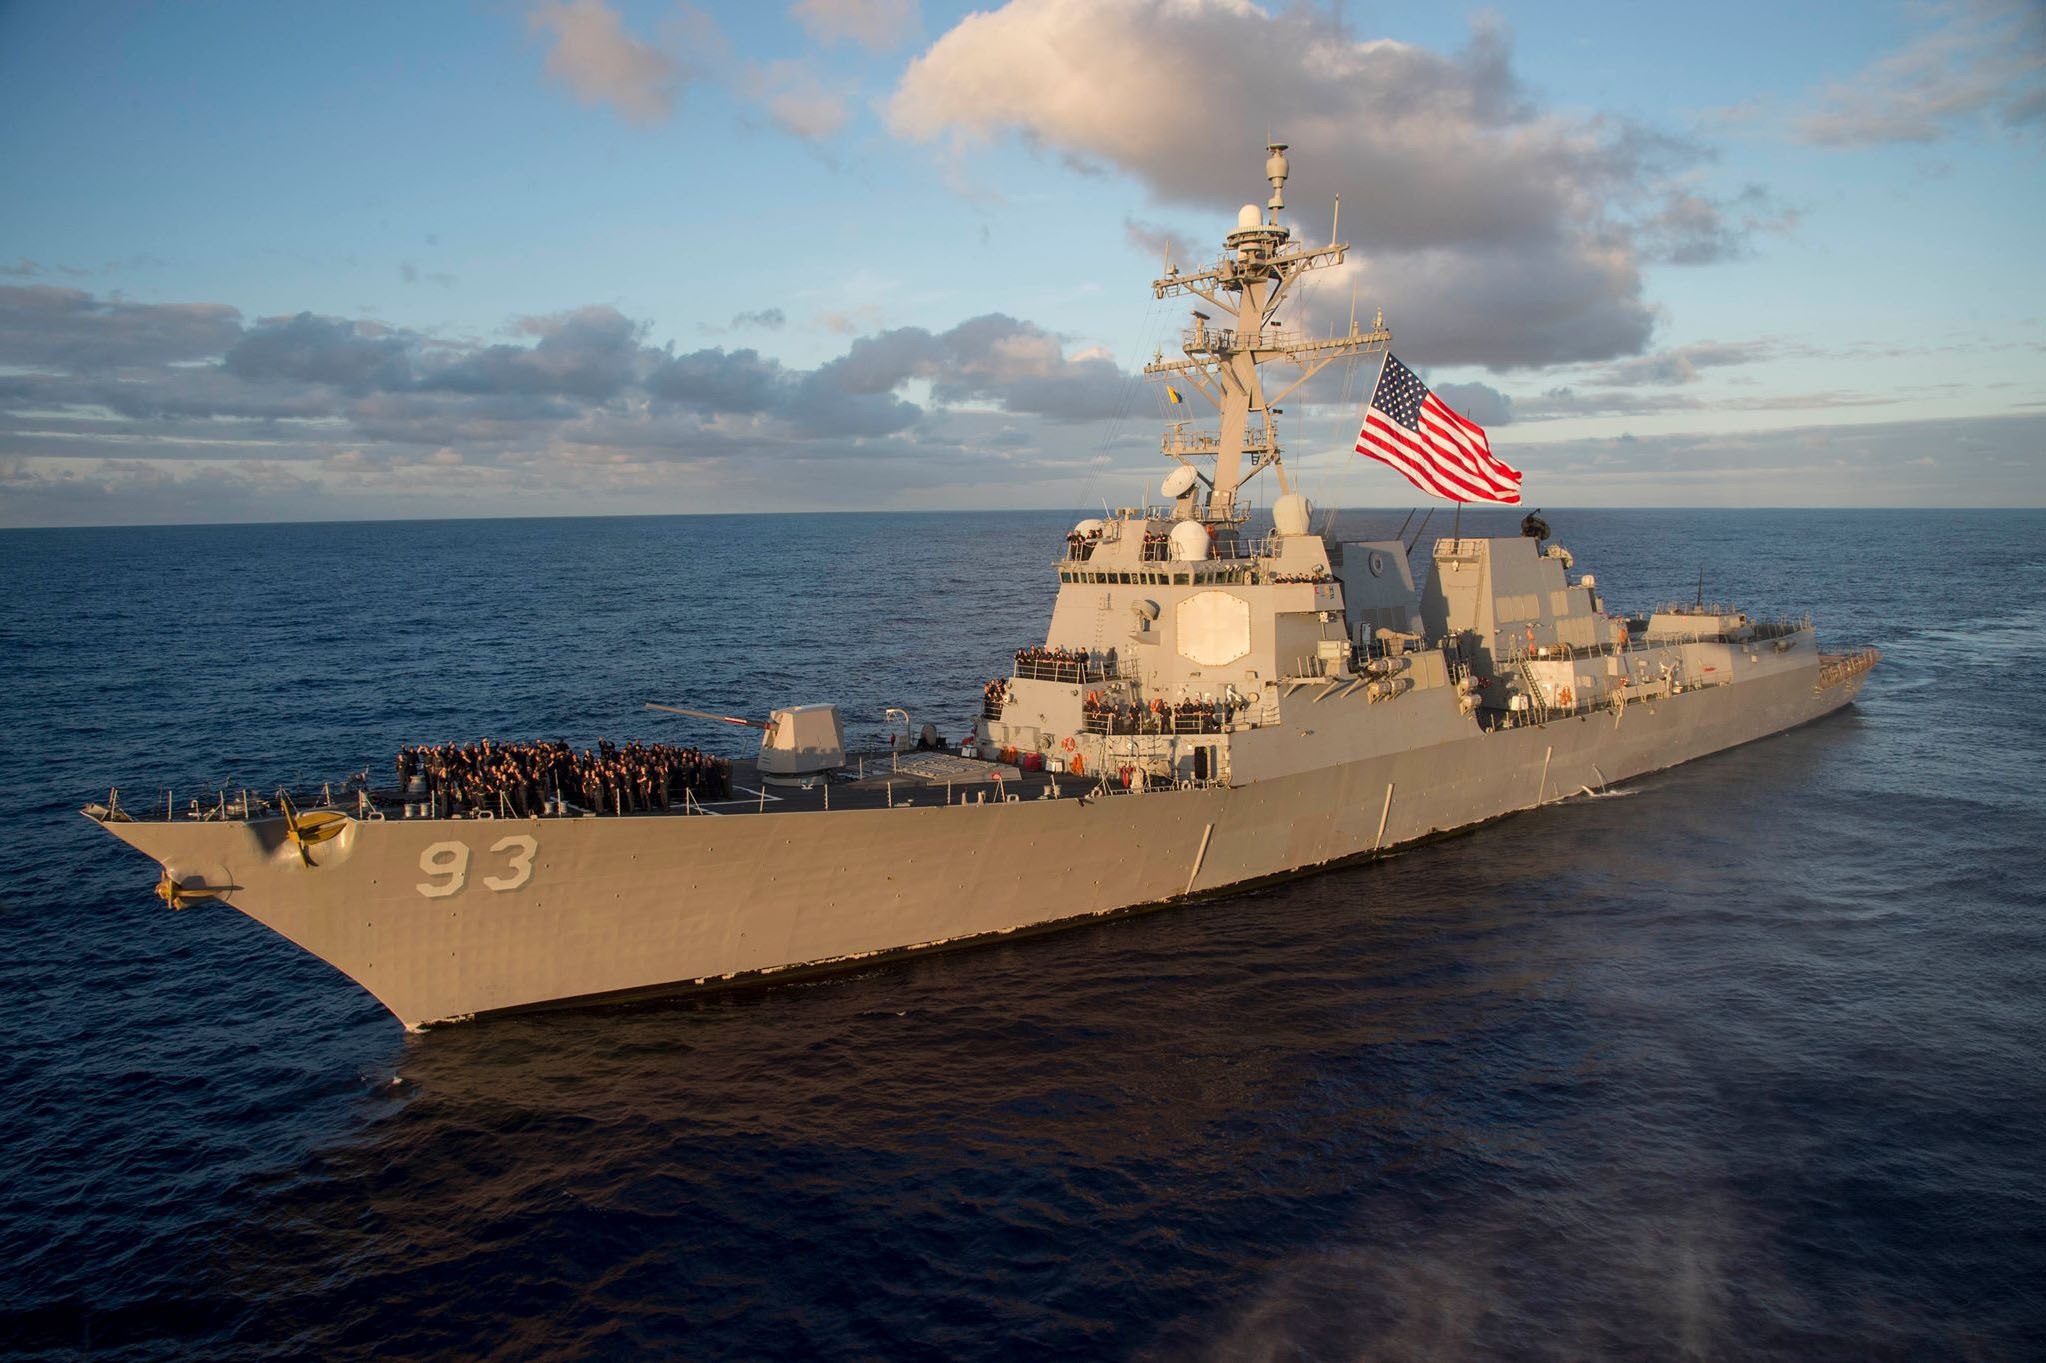 Chiến hạm Mỹ đi qua eo biển Đài Loan, Trung Quốc phản ứng